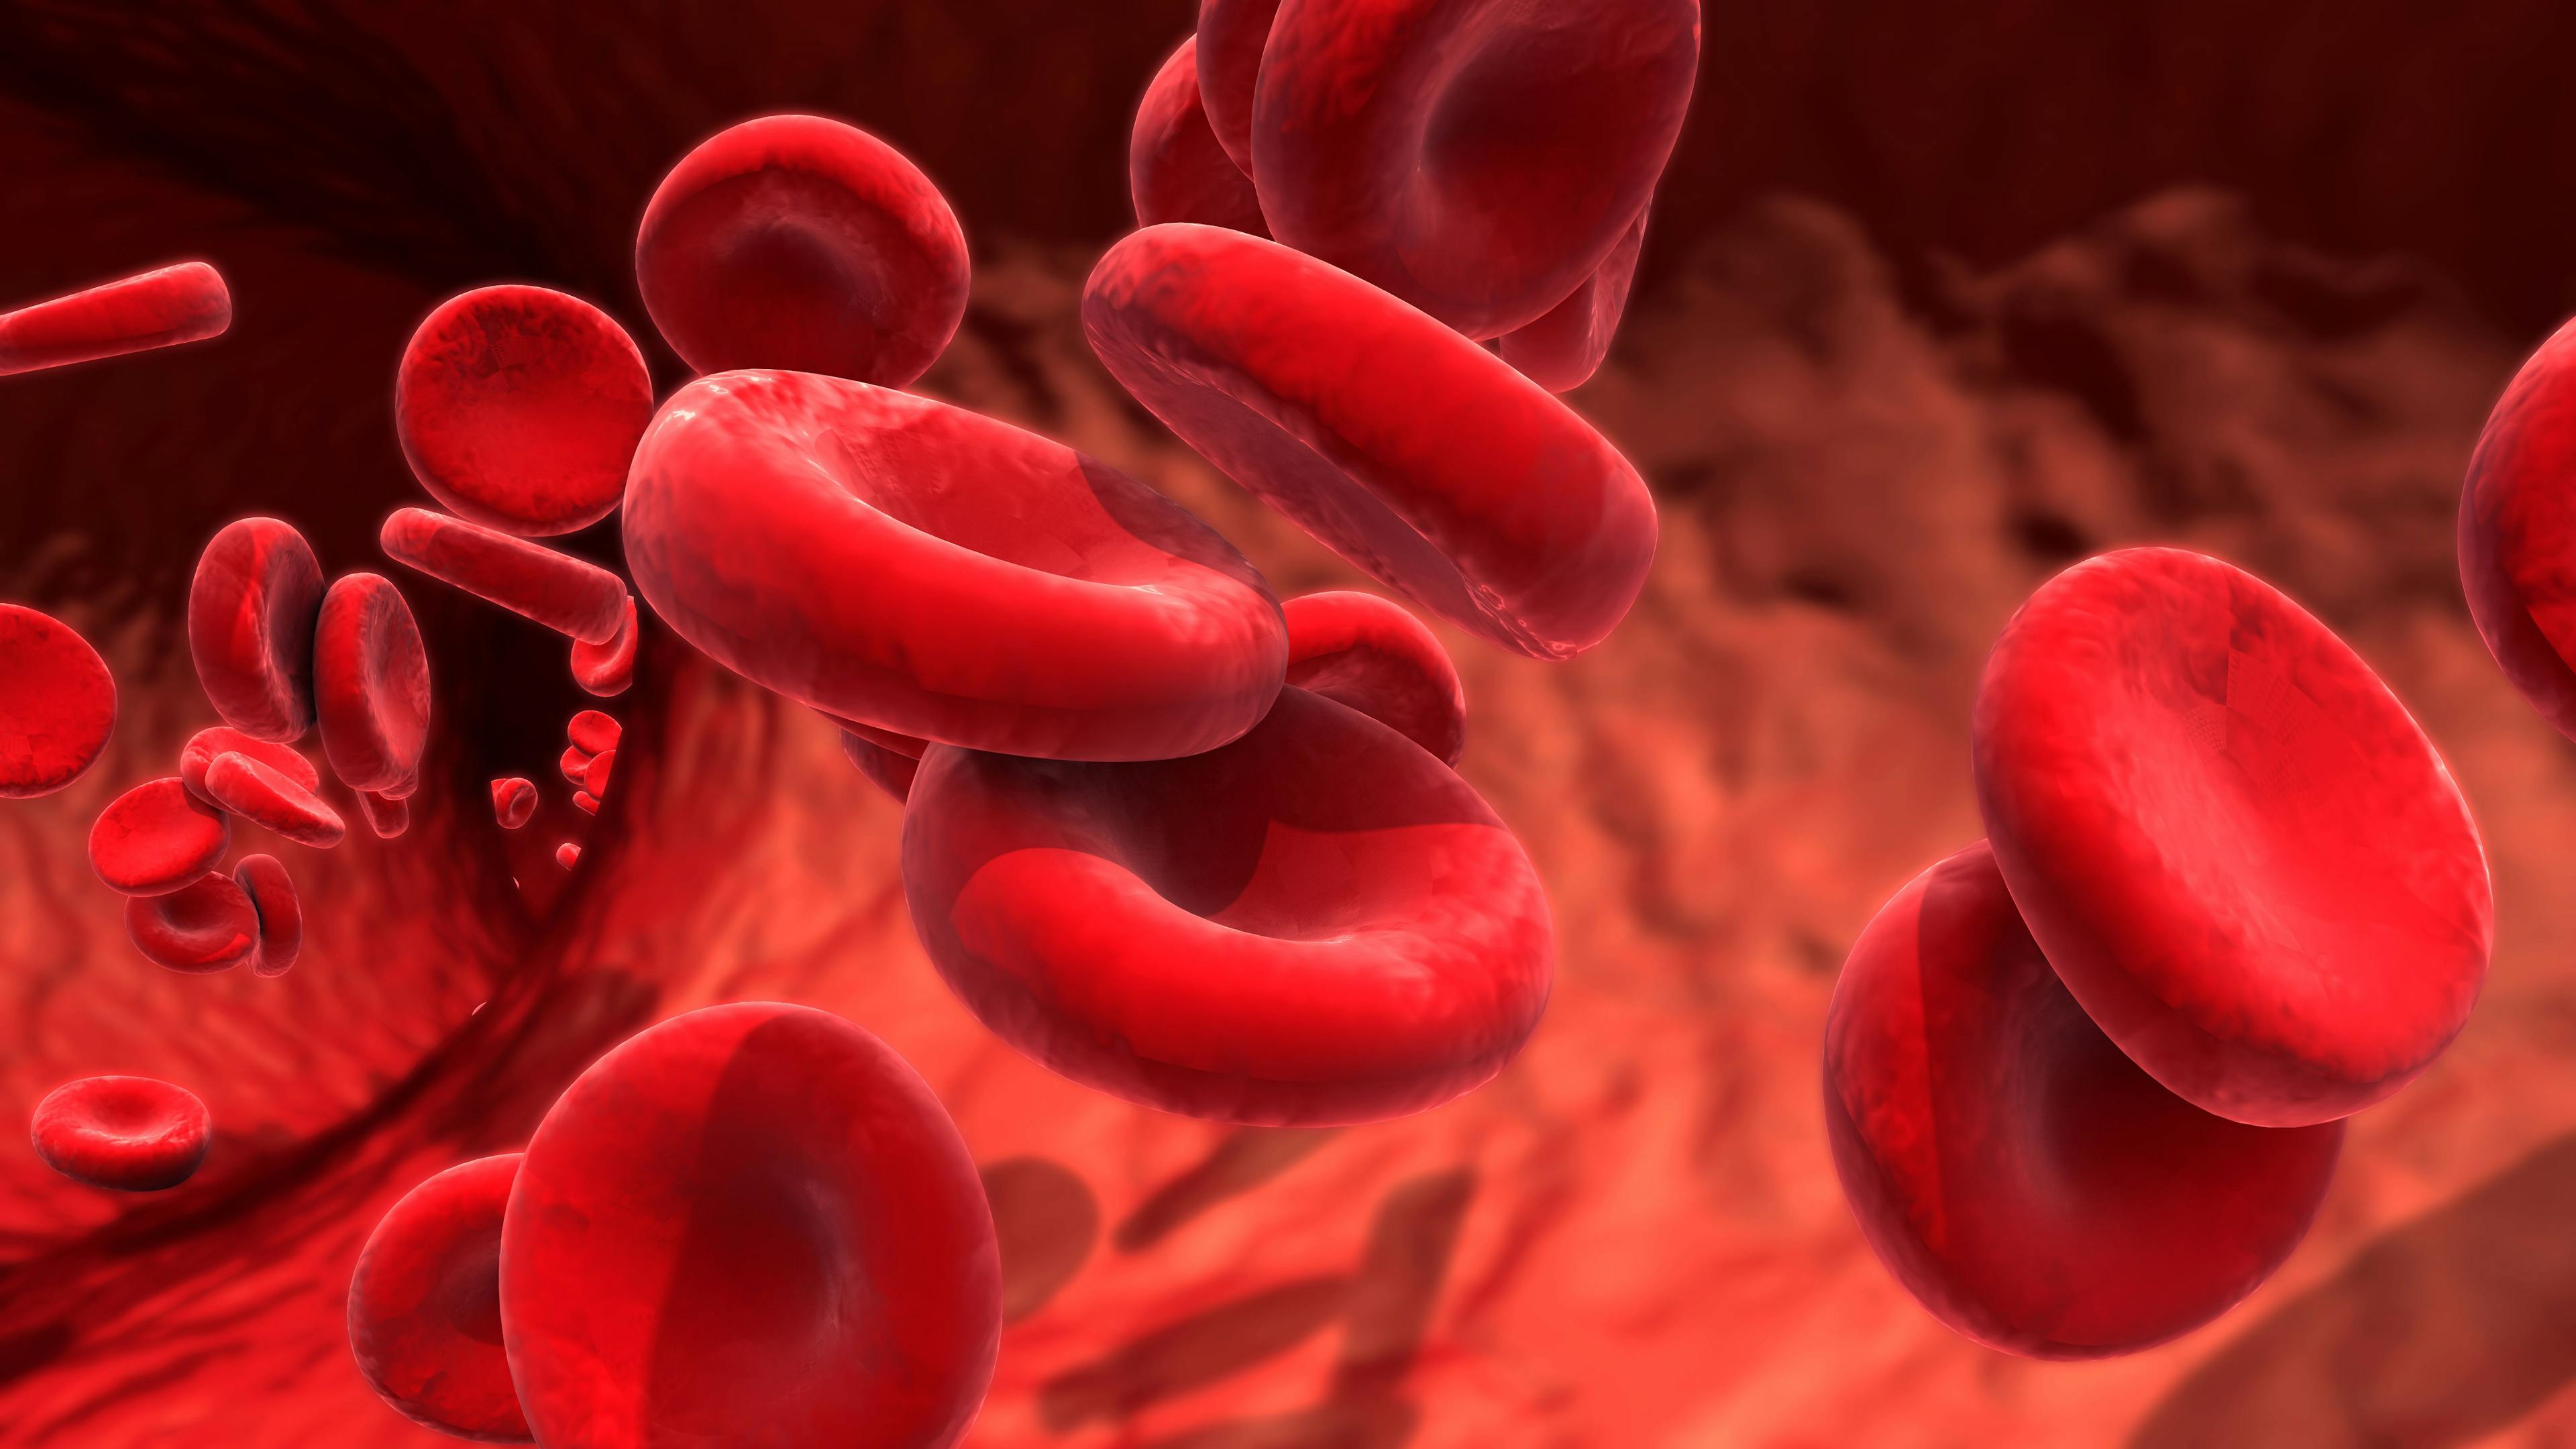 Red Blood Cells | Image credit: Design Cells - stock.adobe.com